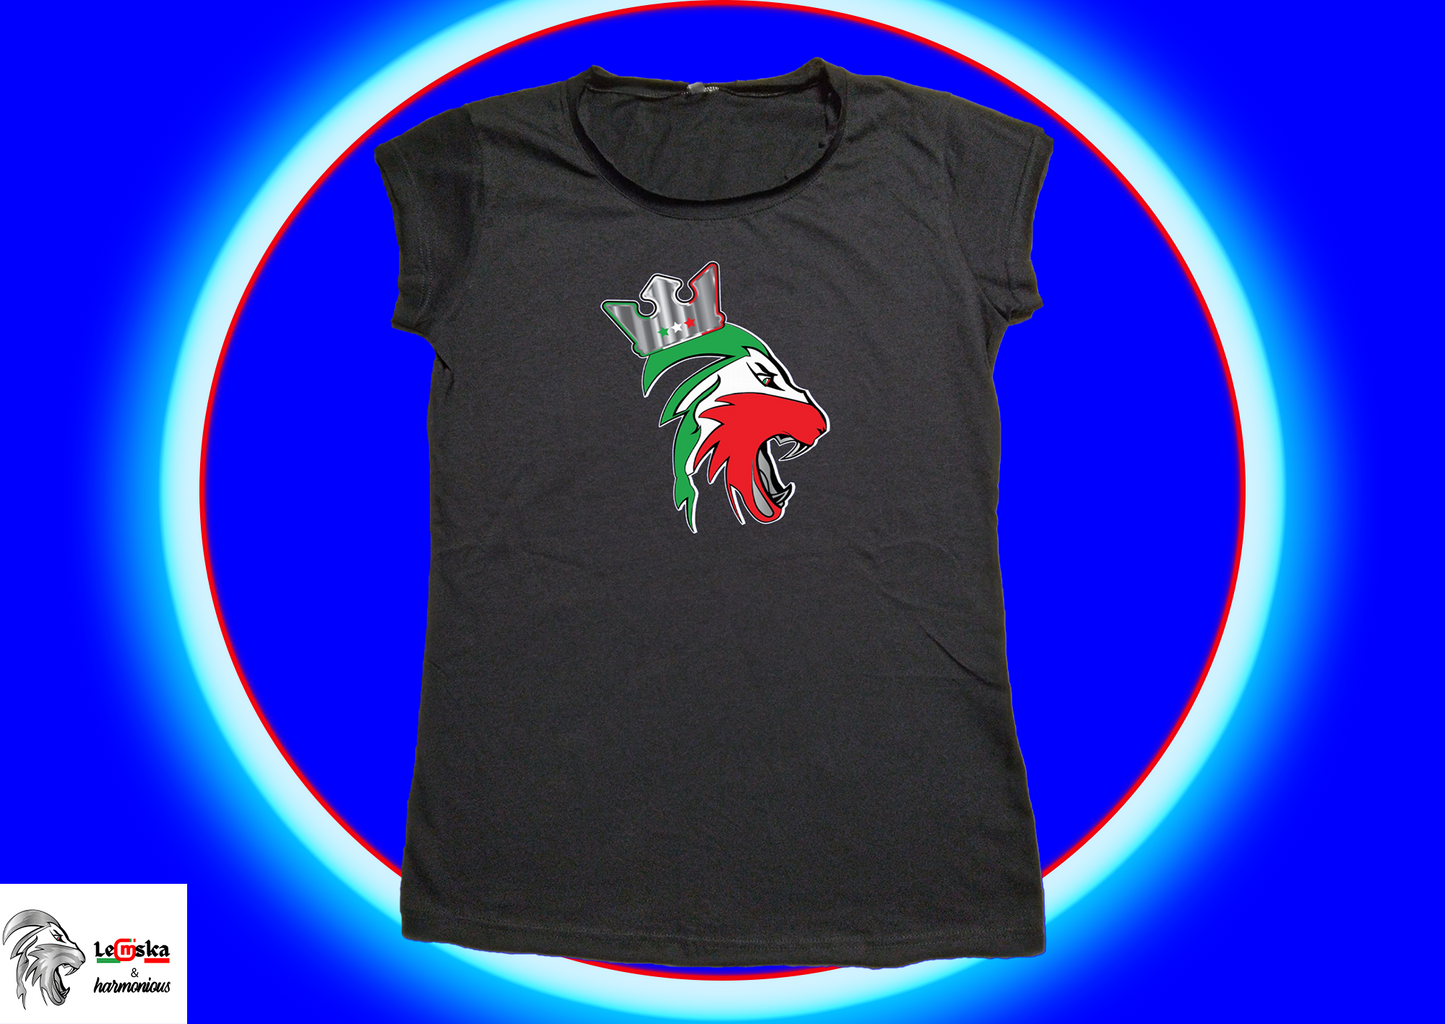 T-shirt donna EDIZIONE LIMITATA 100% Made in Italy